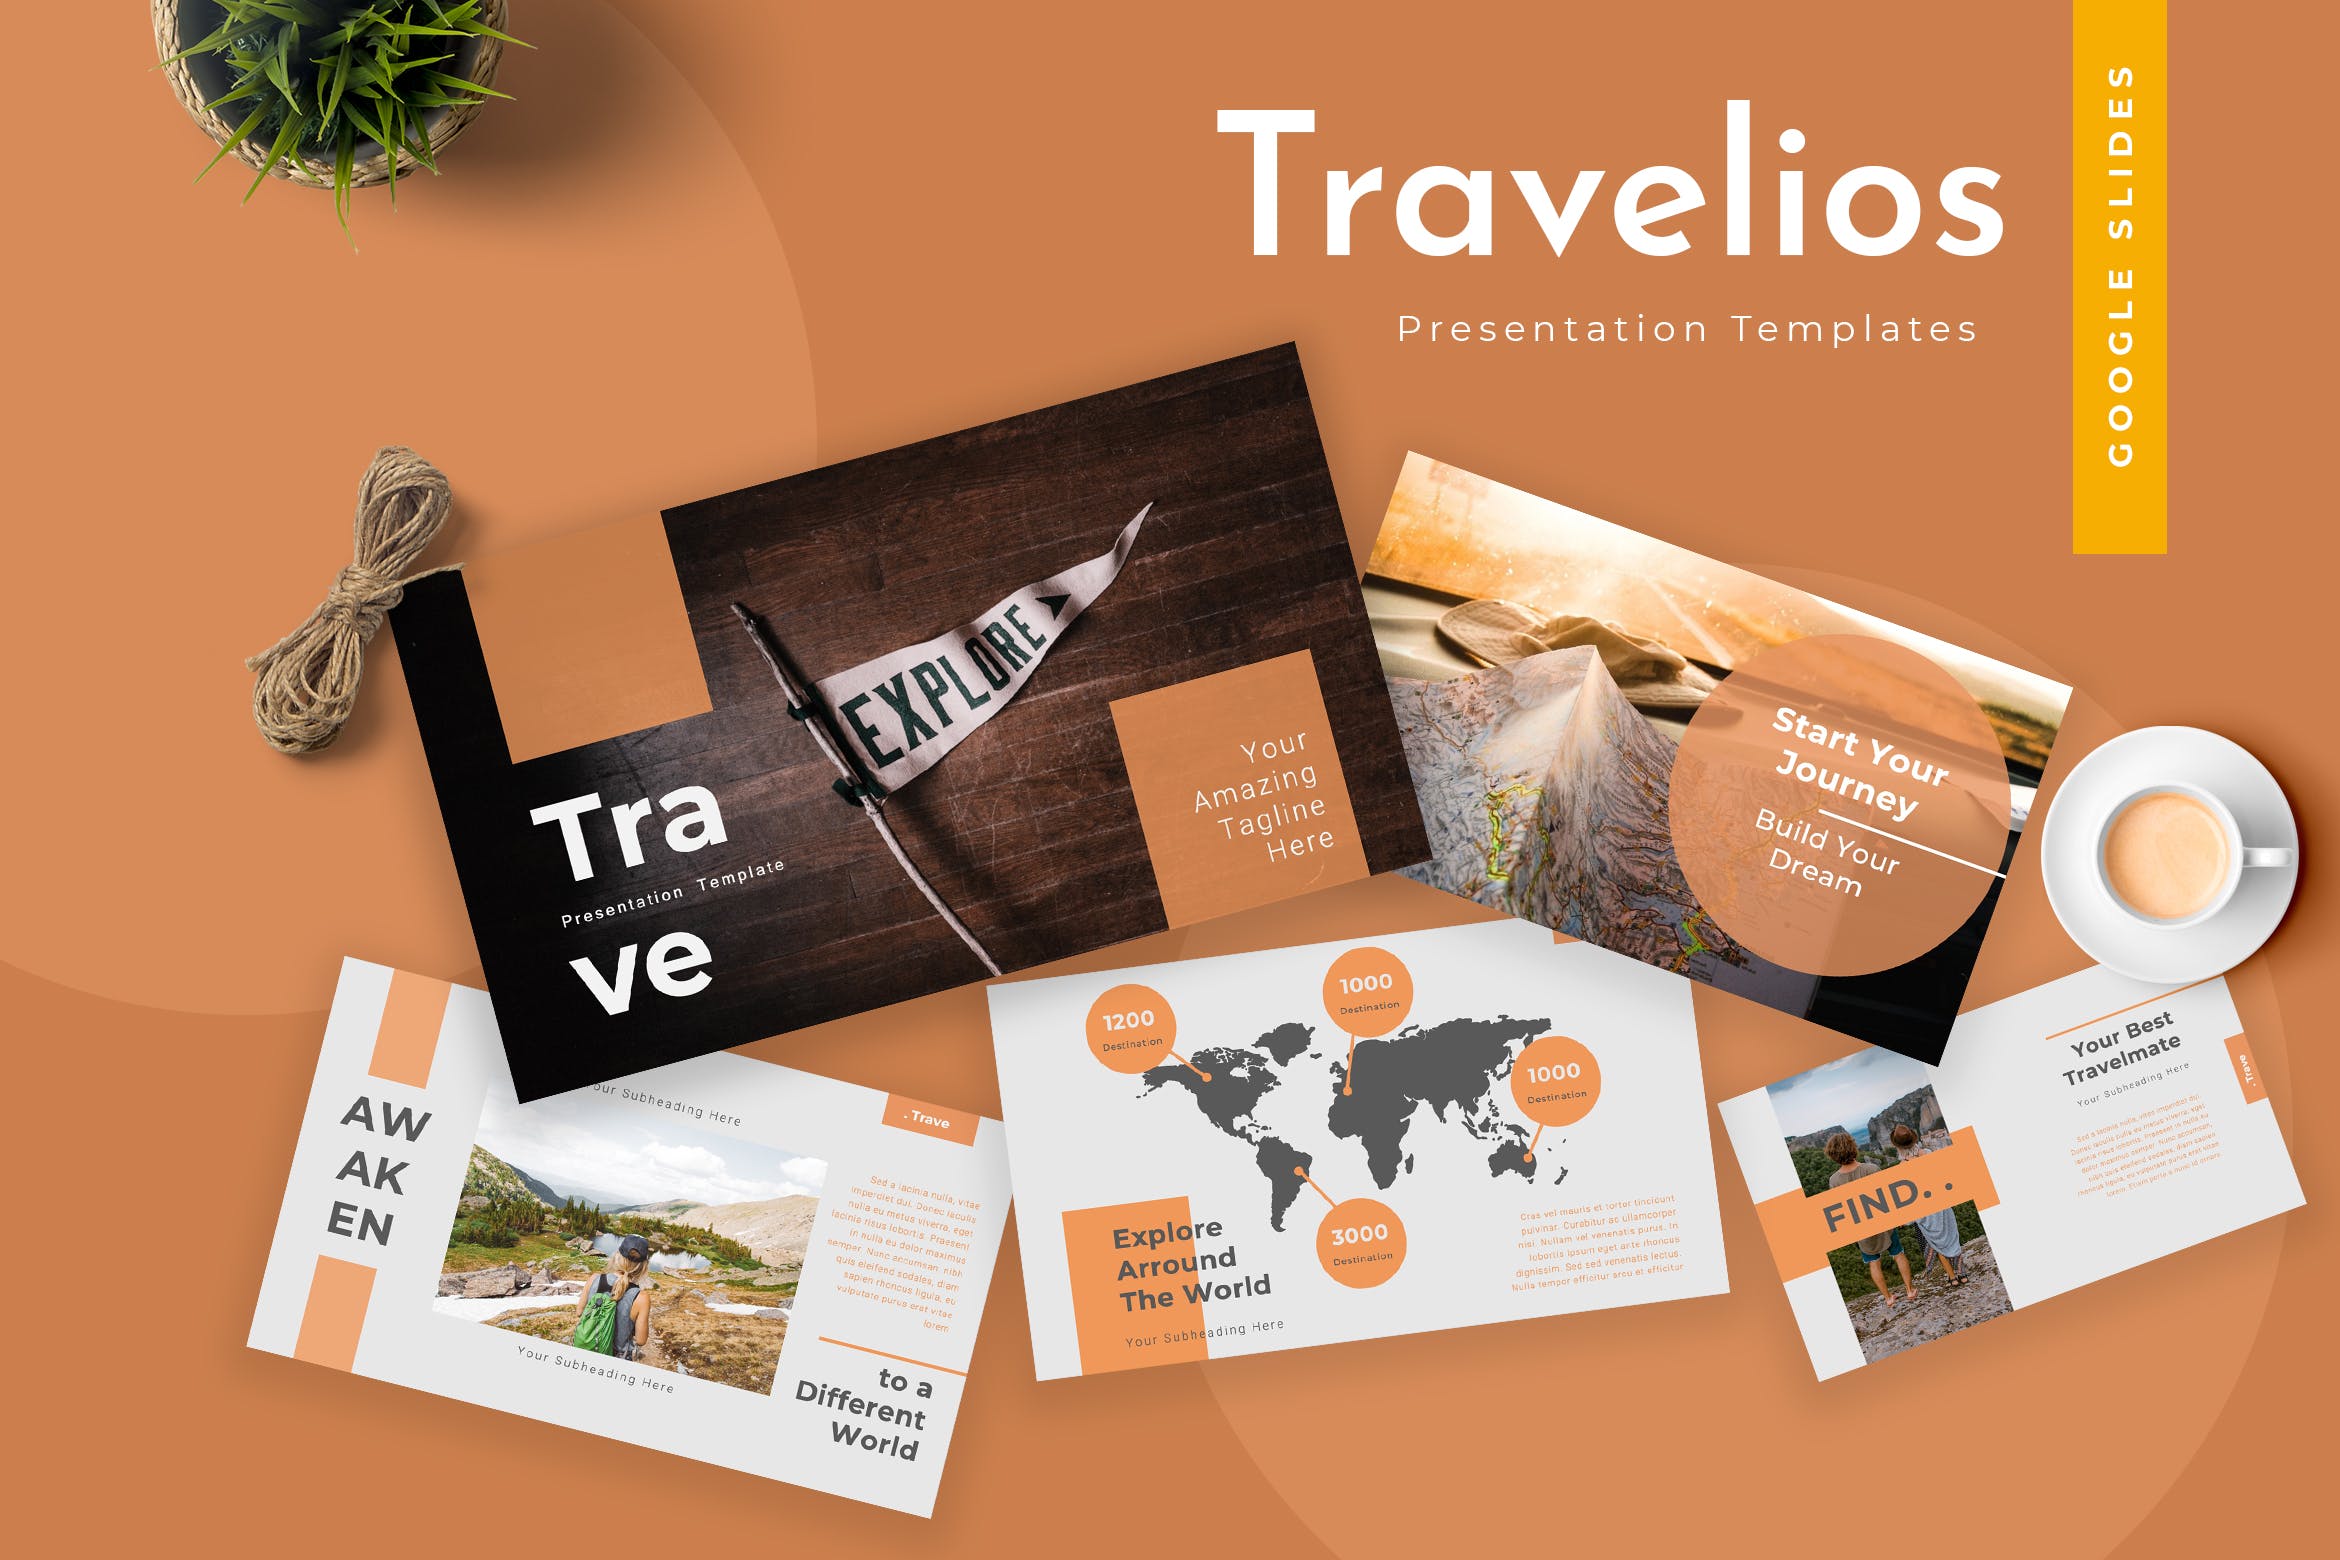 登山爱好者旅游出行类PPT幻灯片模板下载Travelios Google Slides Presentation插图